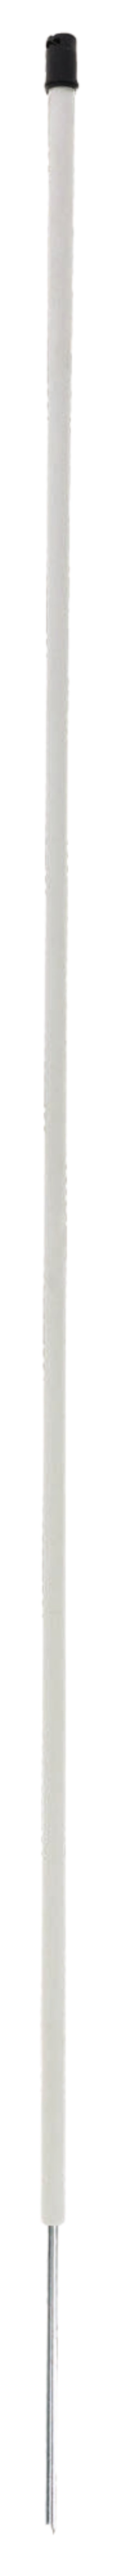 Ersatzpfahl mit Einzelspitze für Geflügelnetz 108 cm, weiß